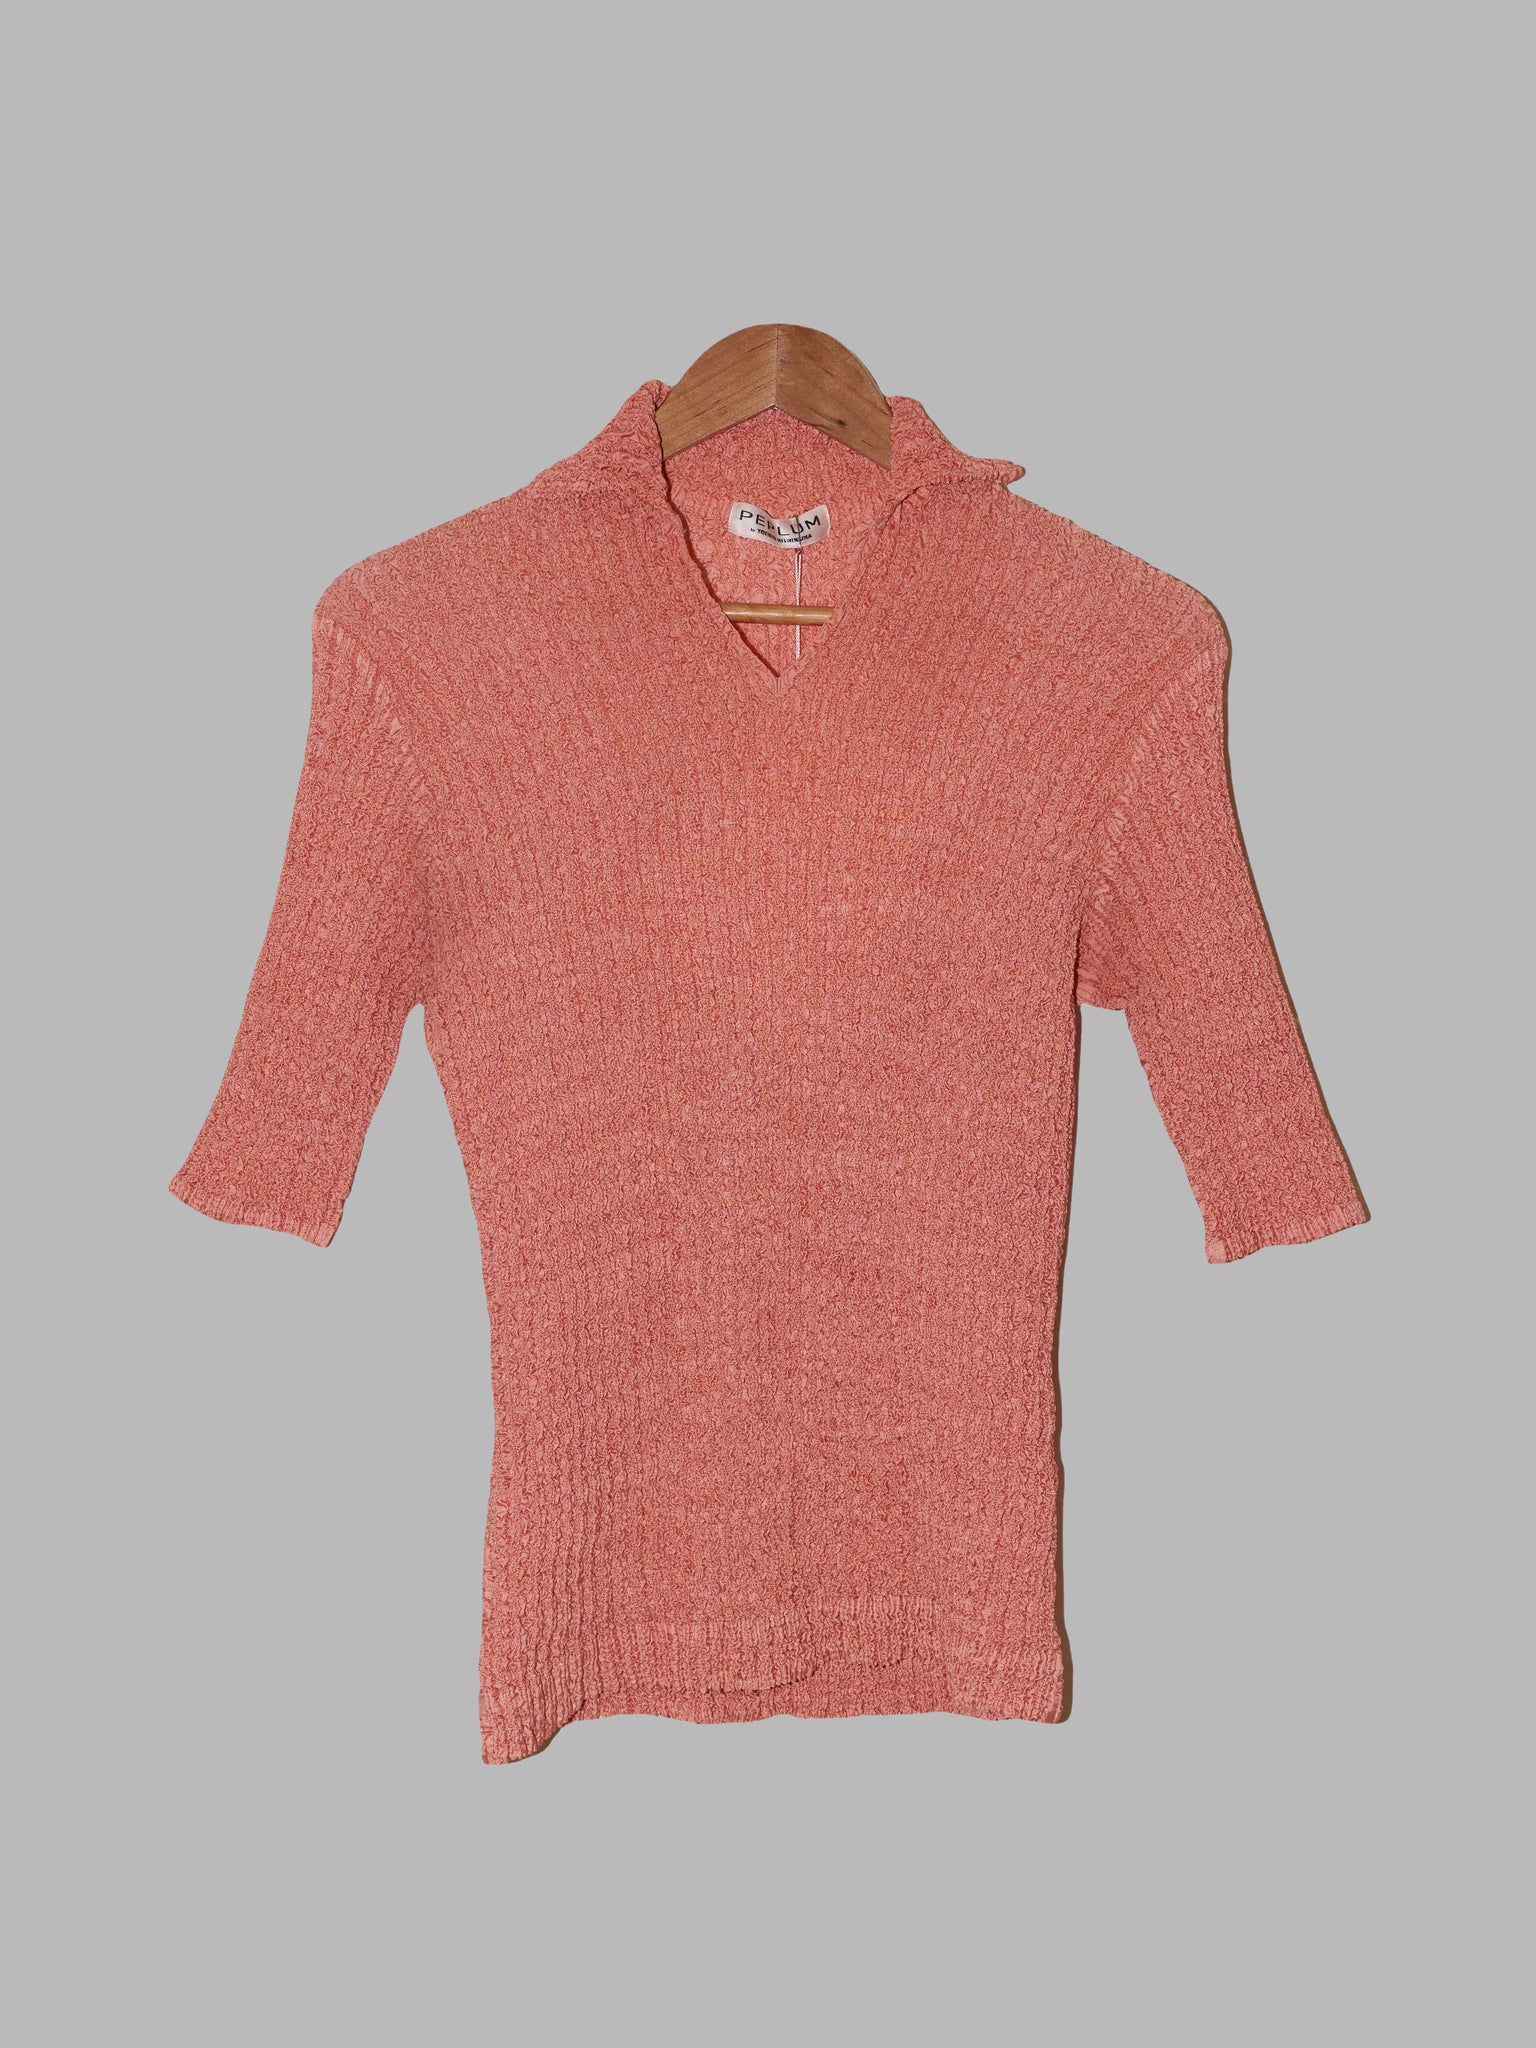 Yoshiki Hishinuma Peplum apricotish wrinkled polyester polo shirt - size 2 M S